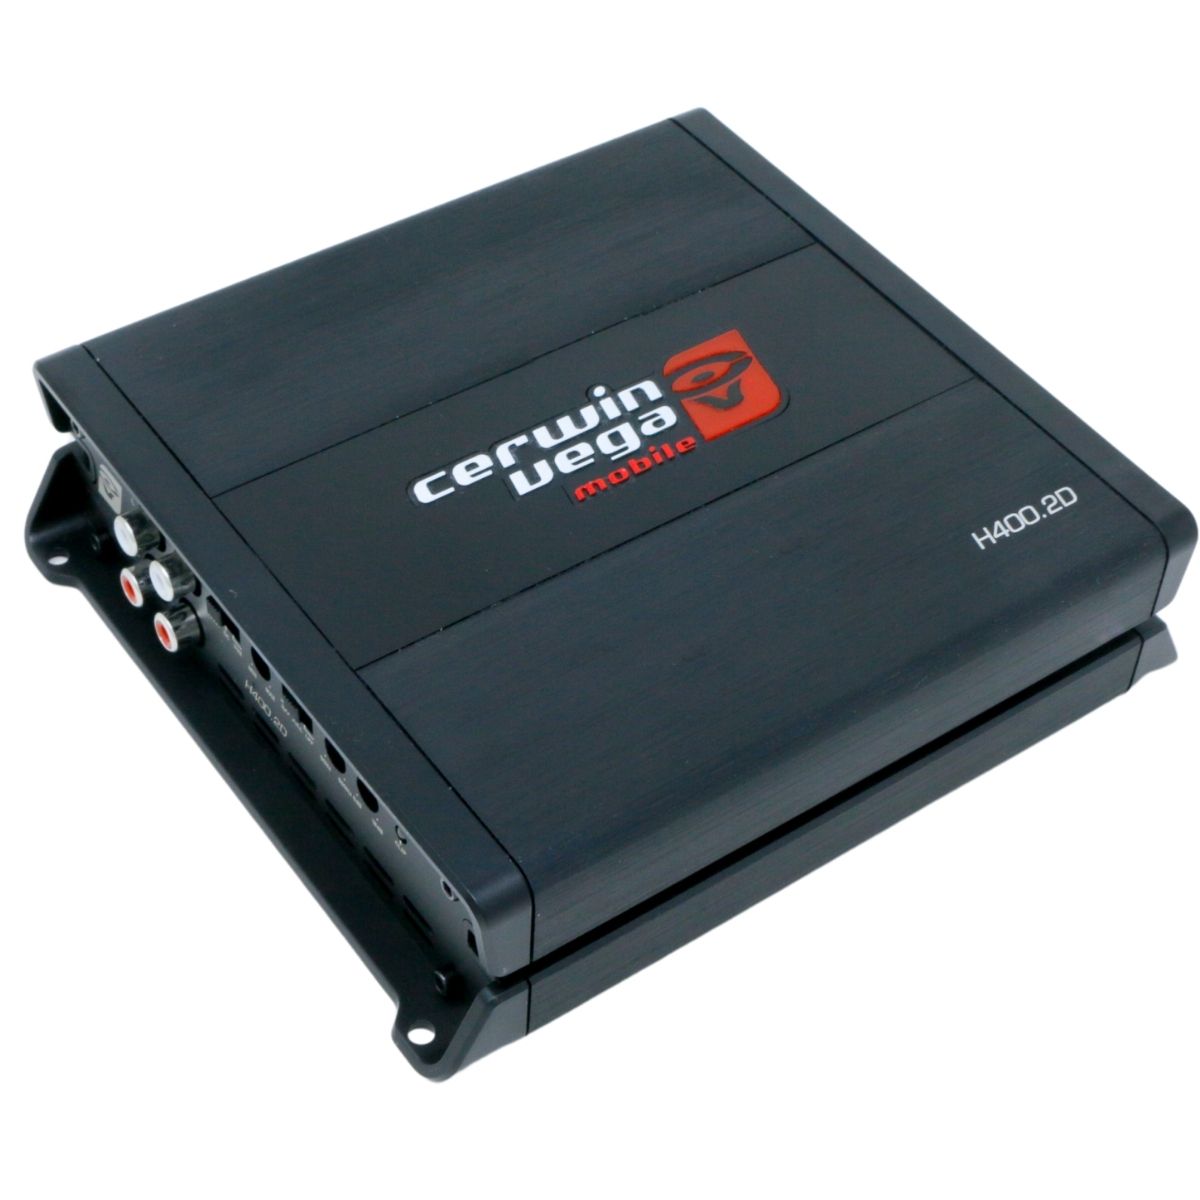 Cerwin Vega H400.2D 290W Full Range Class-D 2 Channel Digital Amplifier